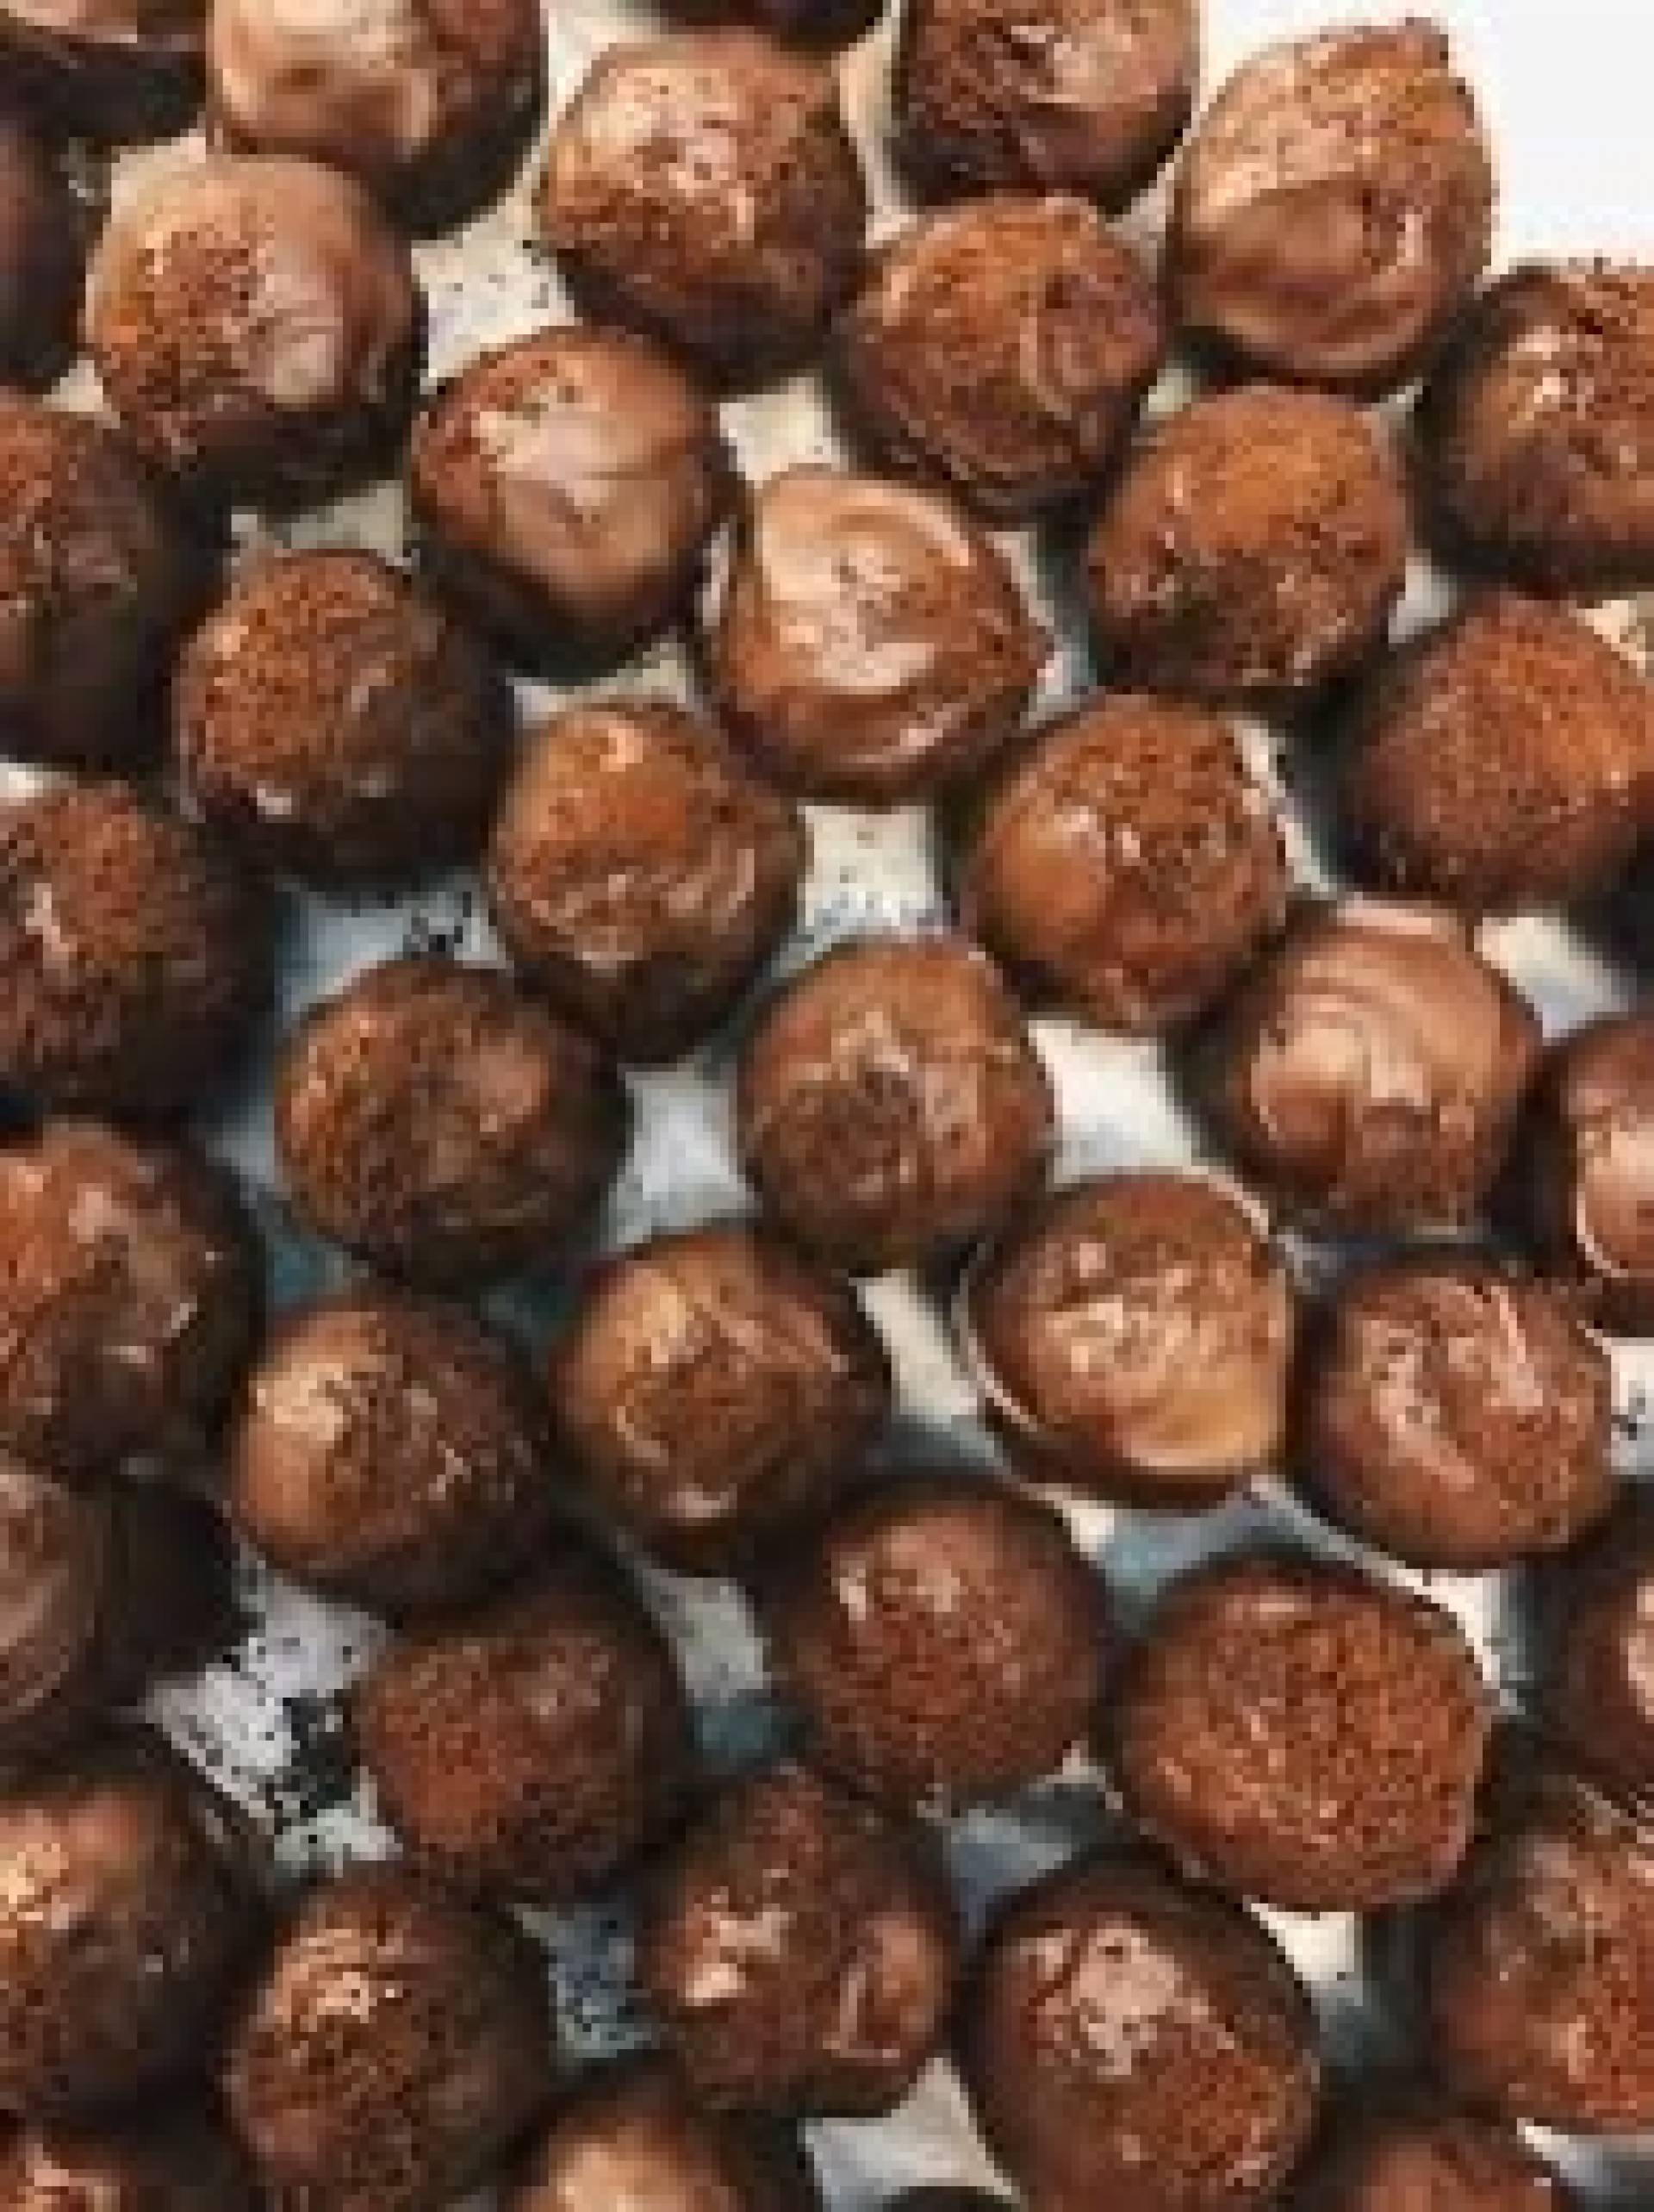 Dark Chocolate Cherry Energy Balls